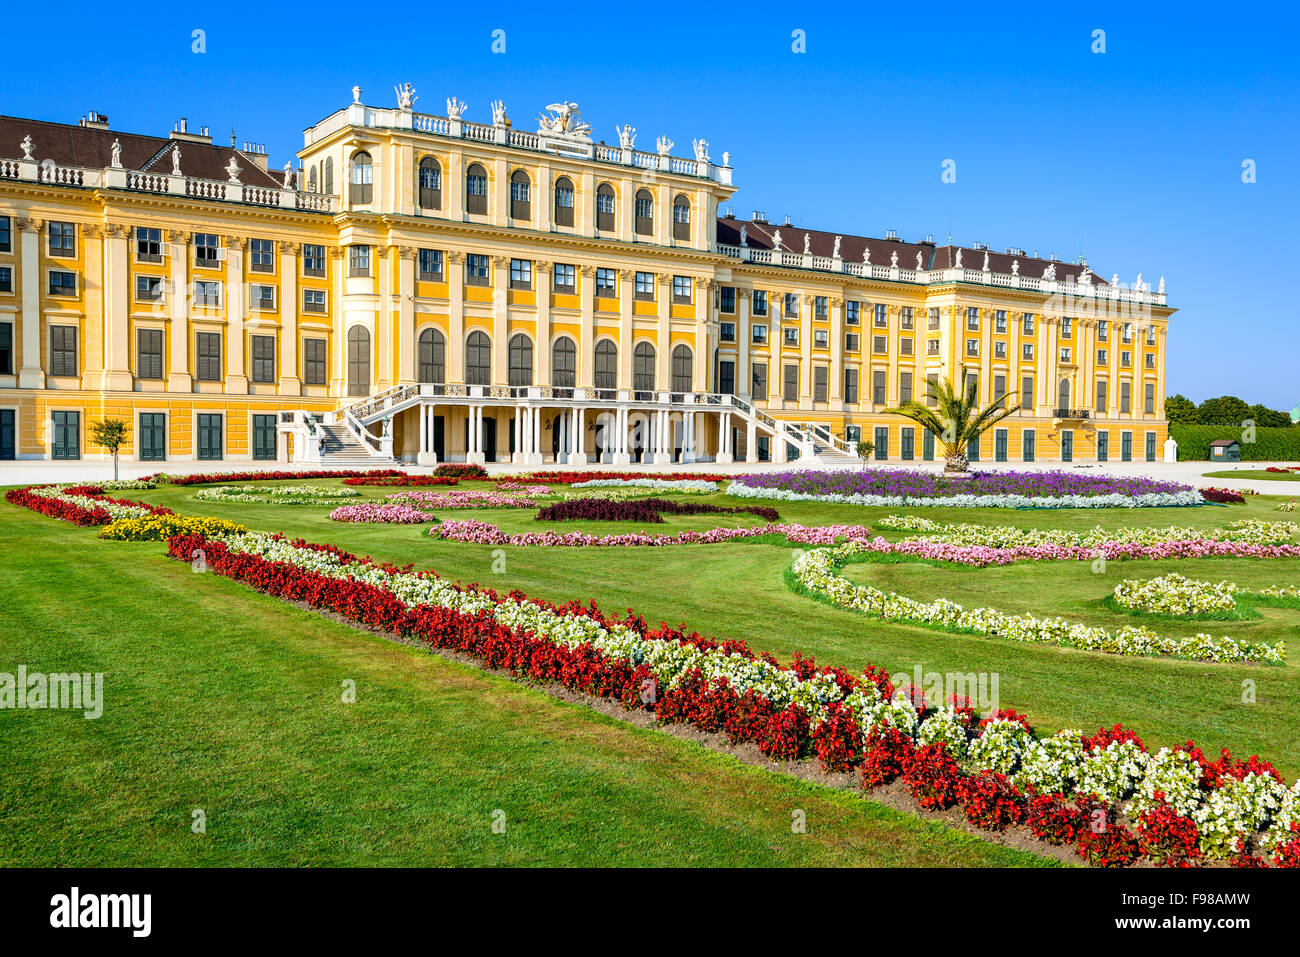 L'Autriche. Palais Schönbrunn à Vienne. C'est un ancien imperial 1 441 chambres en résidence d'été Rococo Wien modernes. Banque D'Images